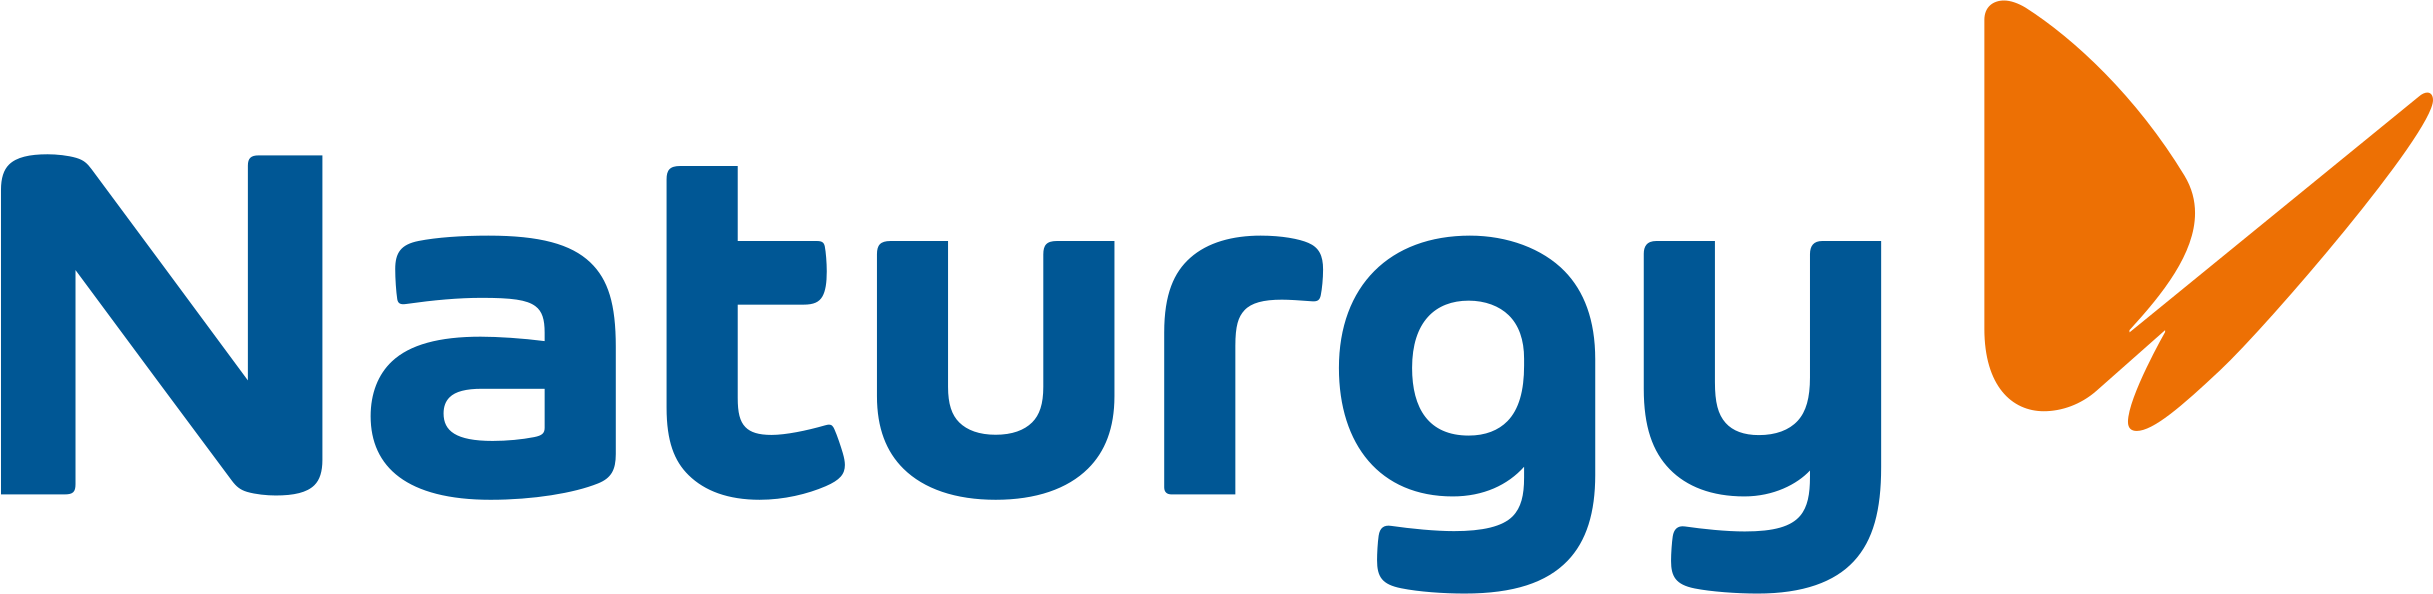 logo naturgy